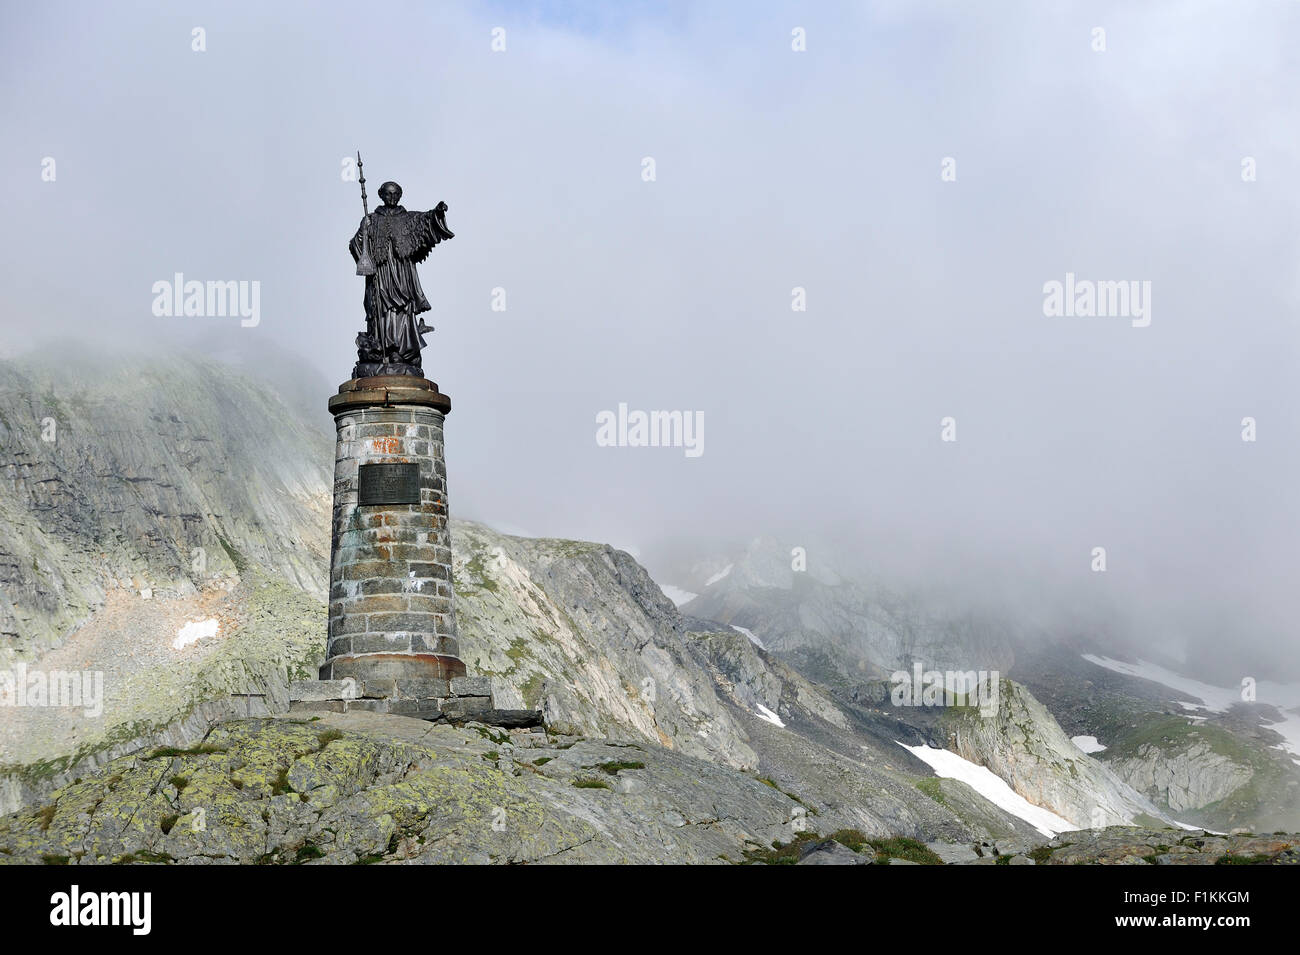 Statue of Saint Bernard at the Great St Bernard Pass / Col du Grand-Saint-Bernard in the Swiss Alps, Switzerland Stock Photo